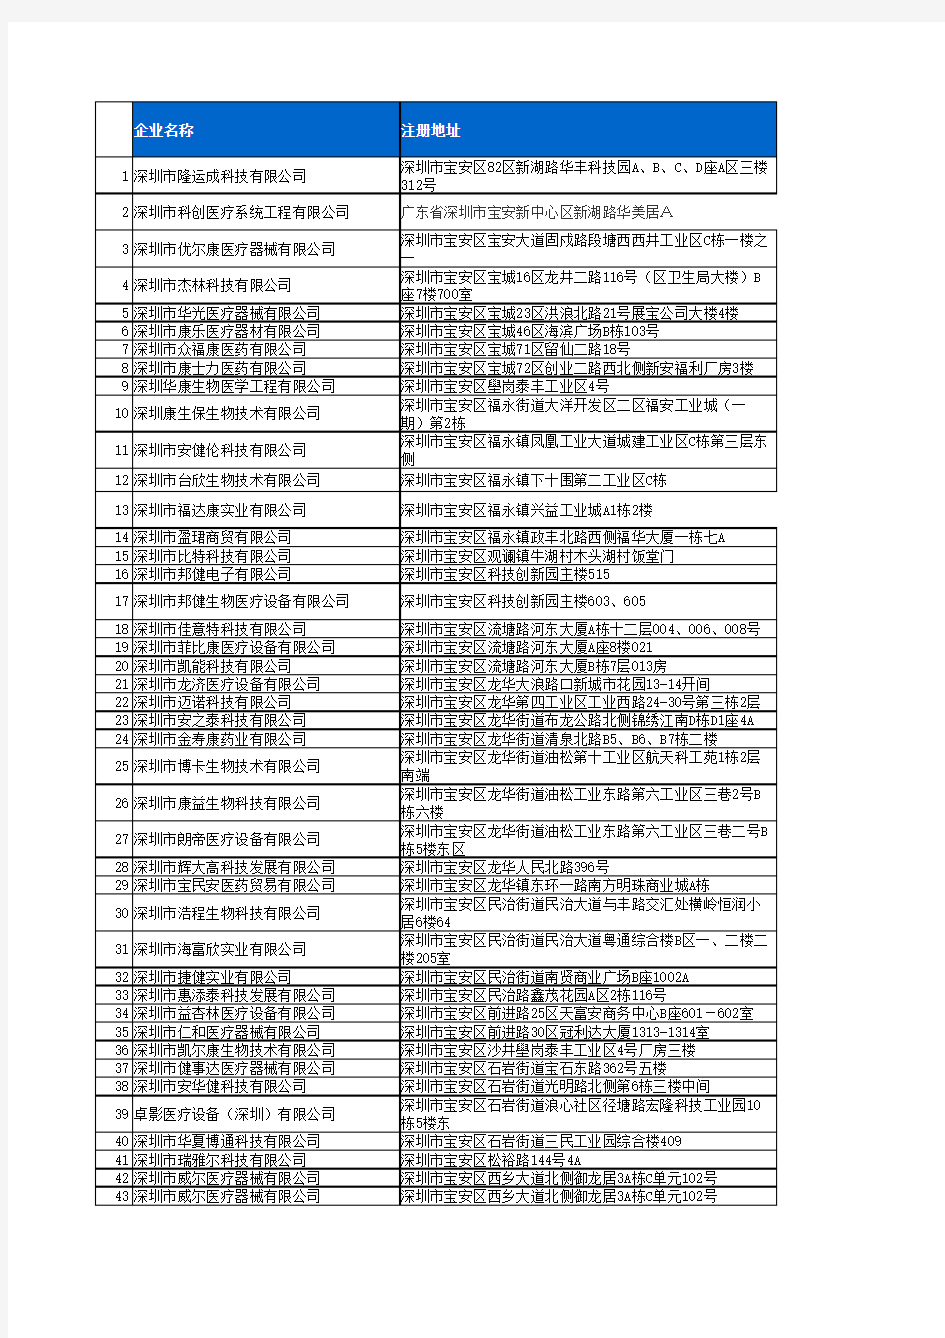 2014年最新深圳医疗器械公司采购名单